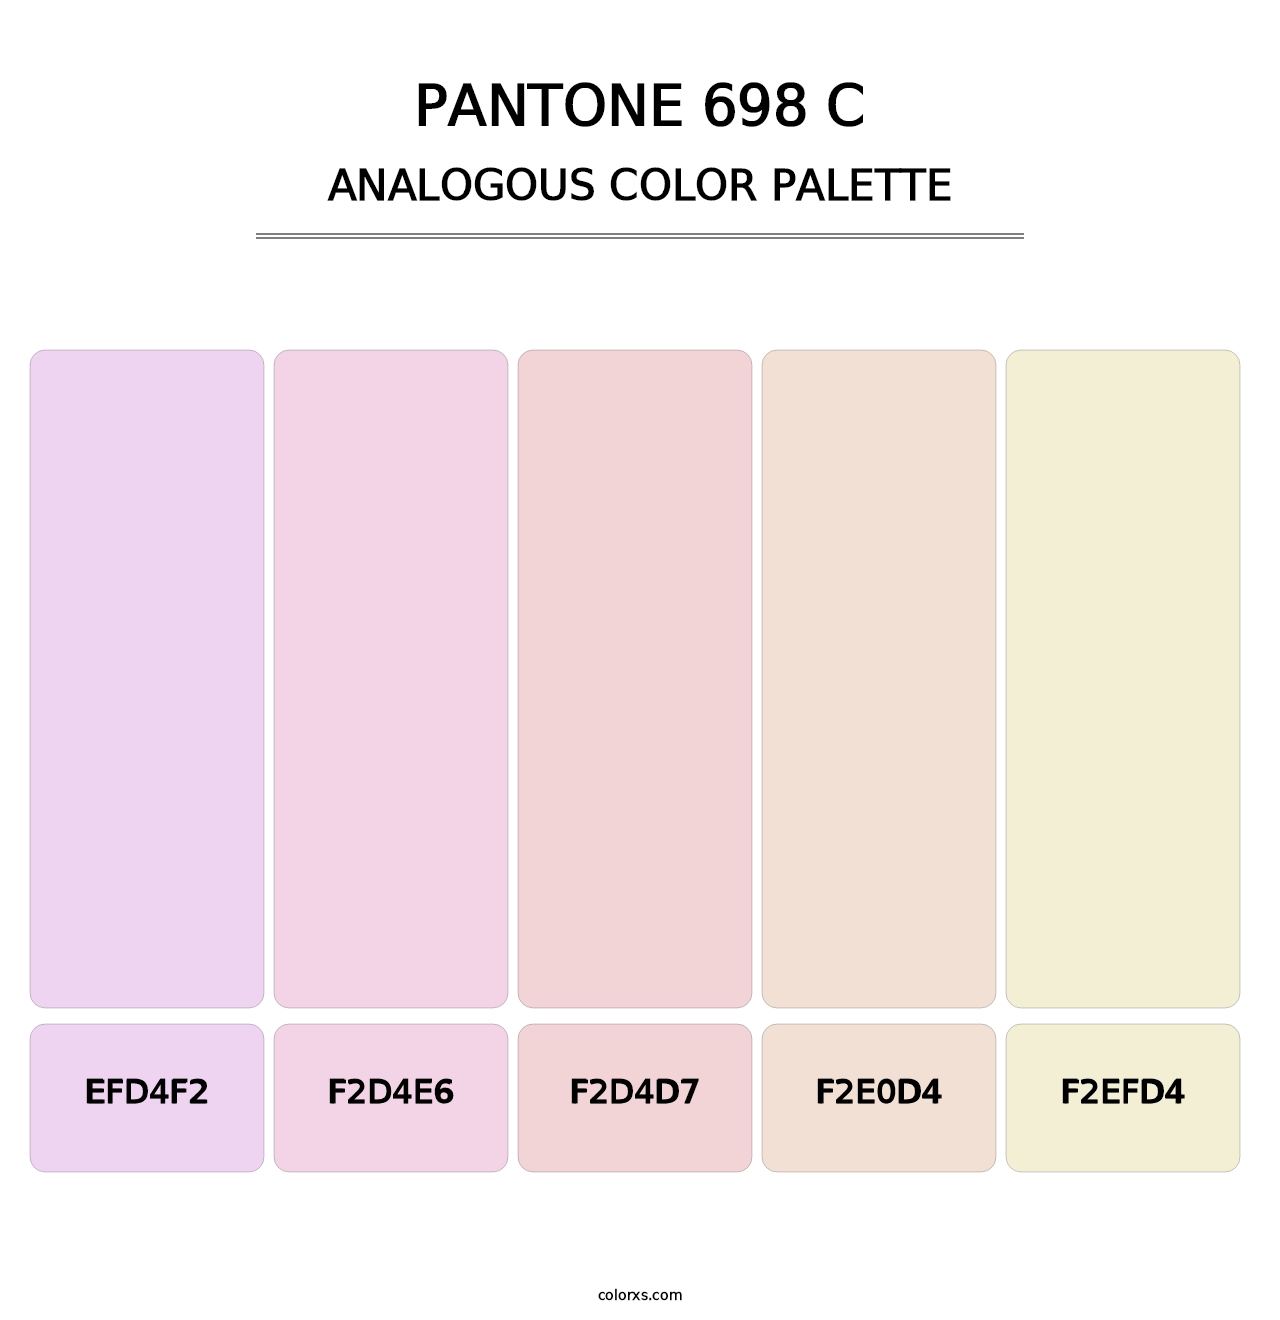 PANTONE 698 C - Analogous Color Palette